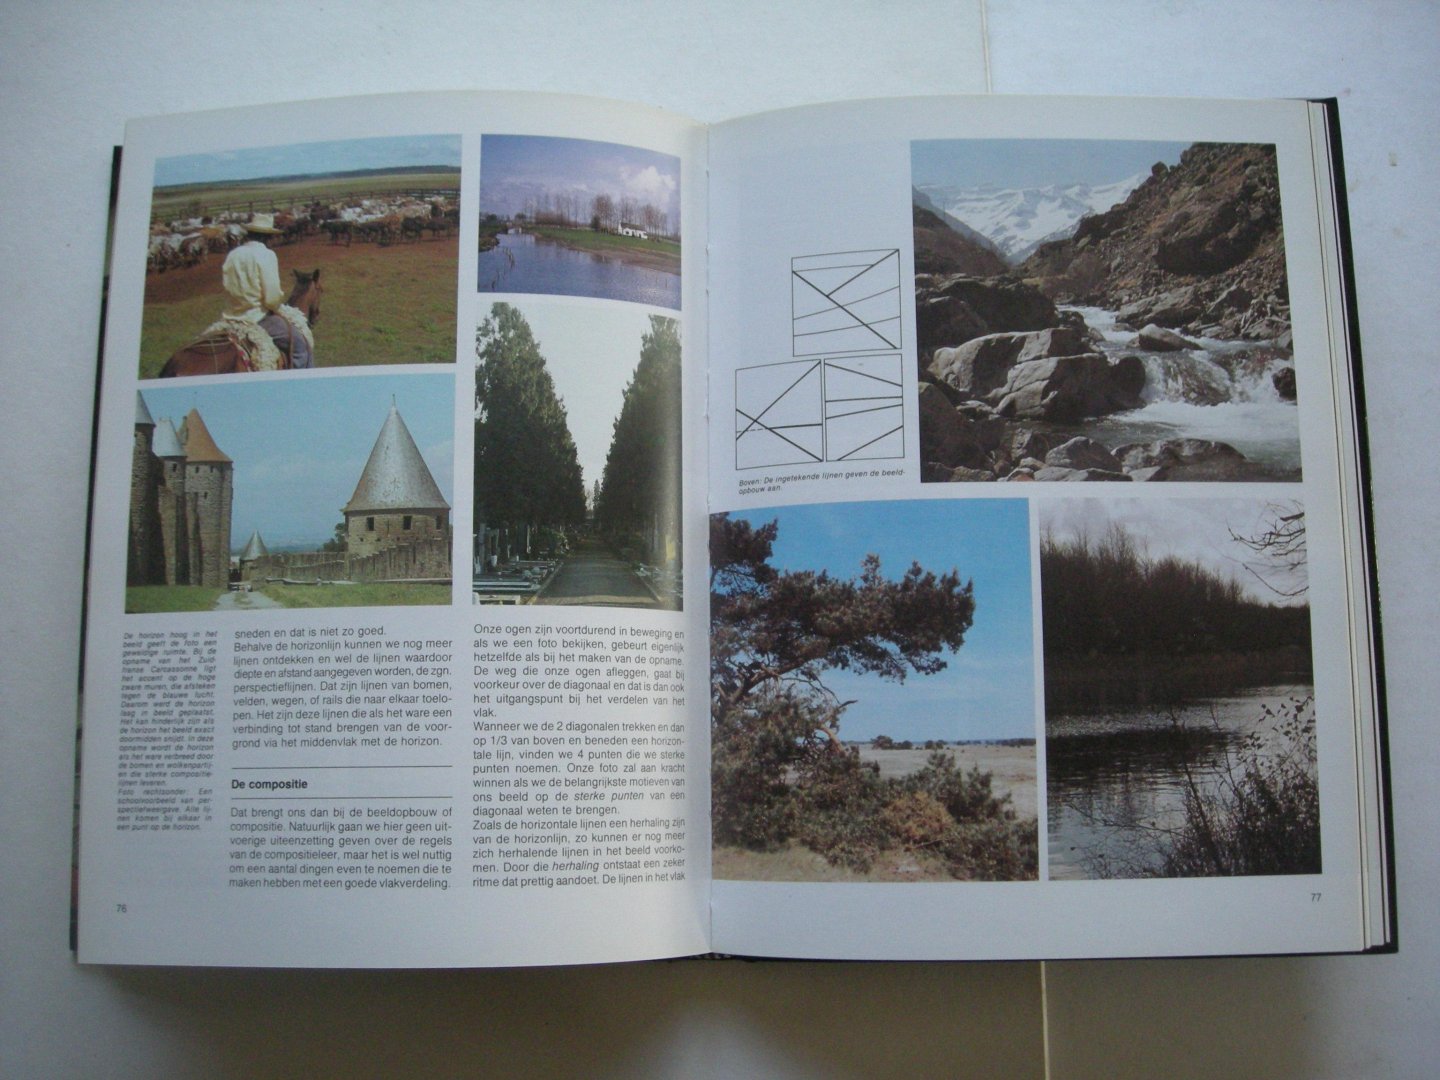 Meewis, Frans & Paping, Harry - Deltas foto encyclopedie. Een boek waar iedereen in de praktijk wat mee kan doen!